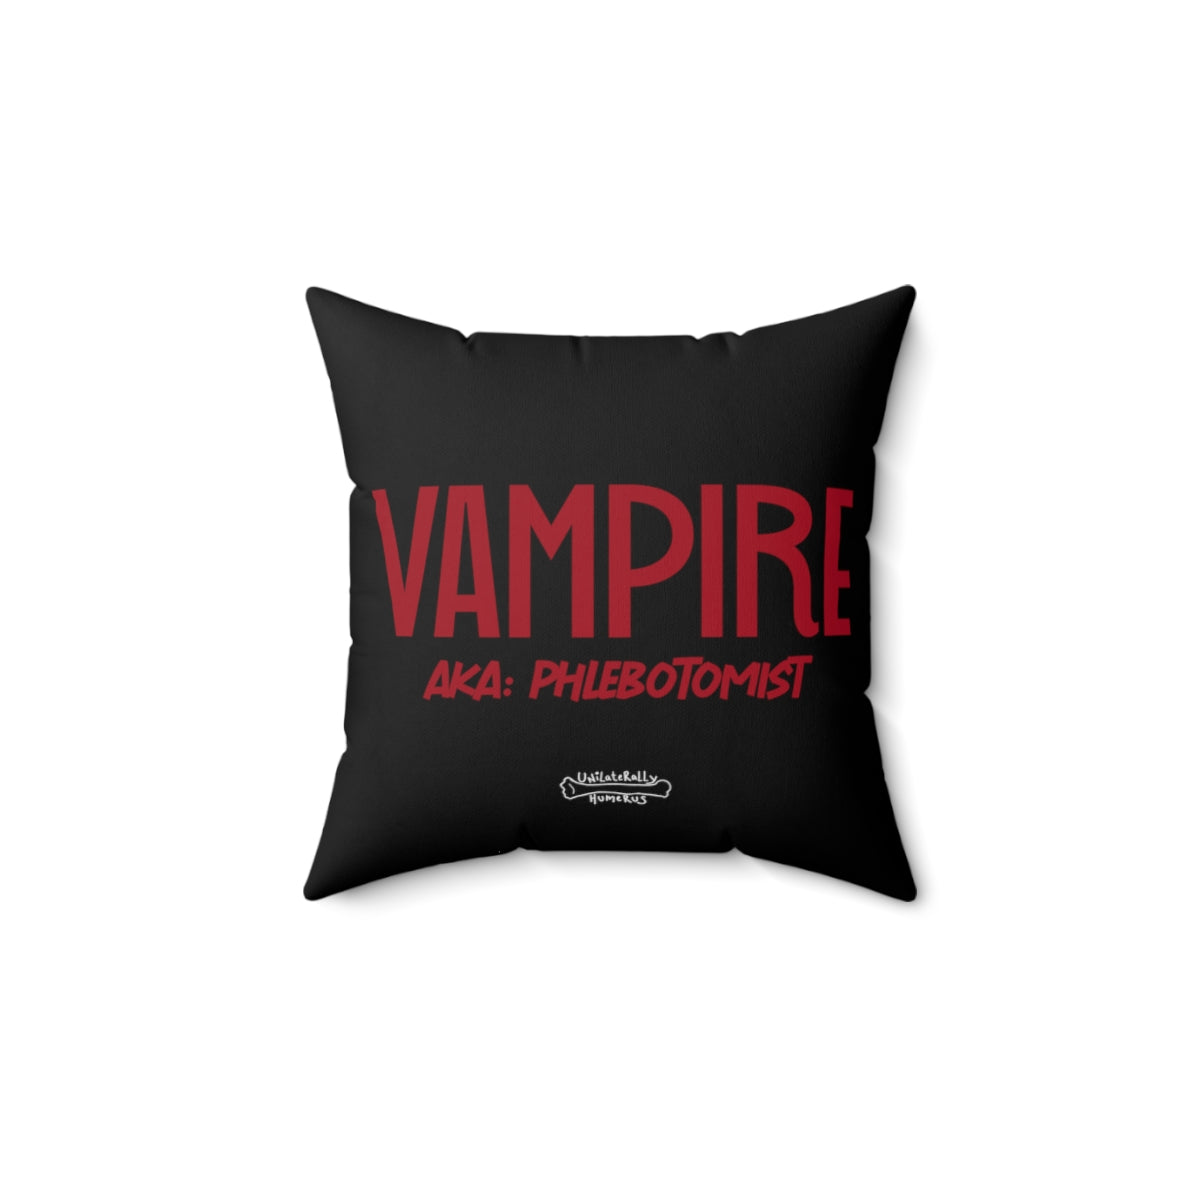 Vampire: AKA Phlebotomist Spun Polyester Square Pillow